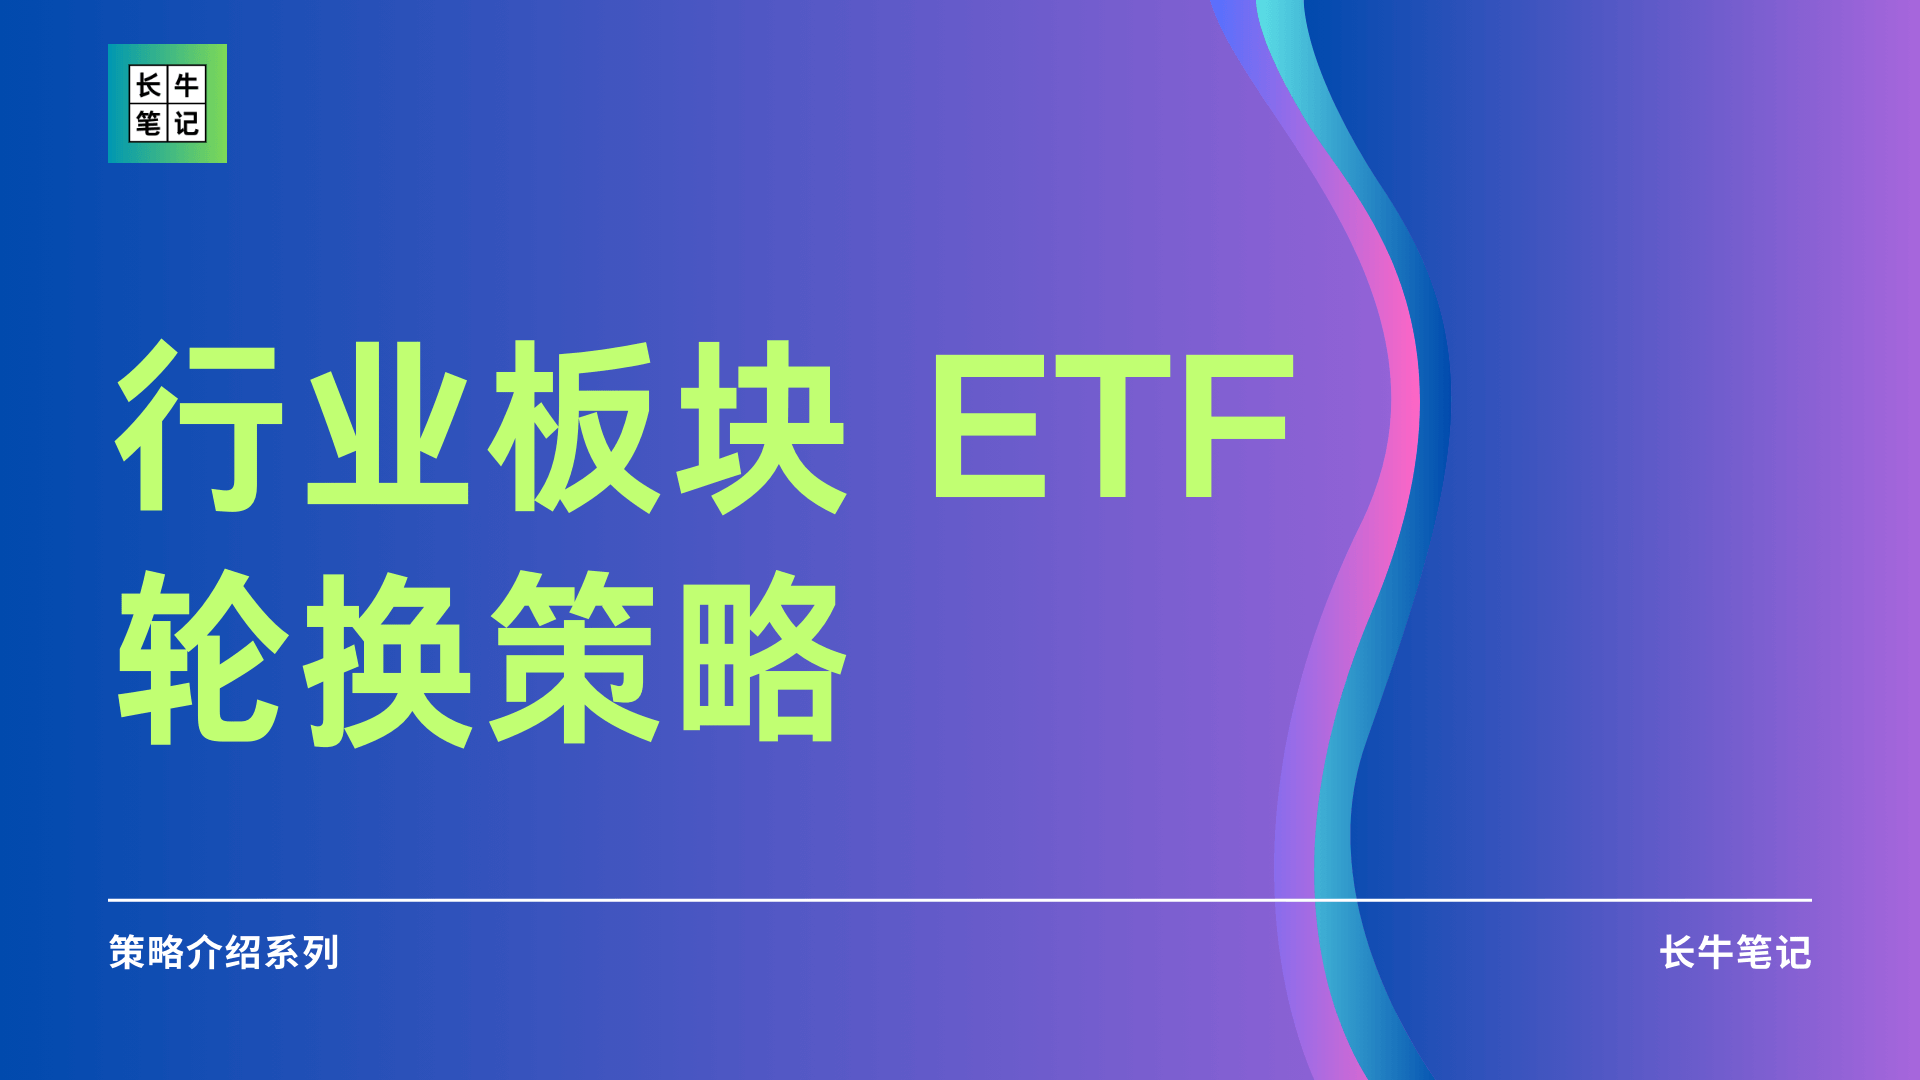 美股公司行业分类及ETF